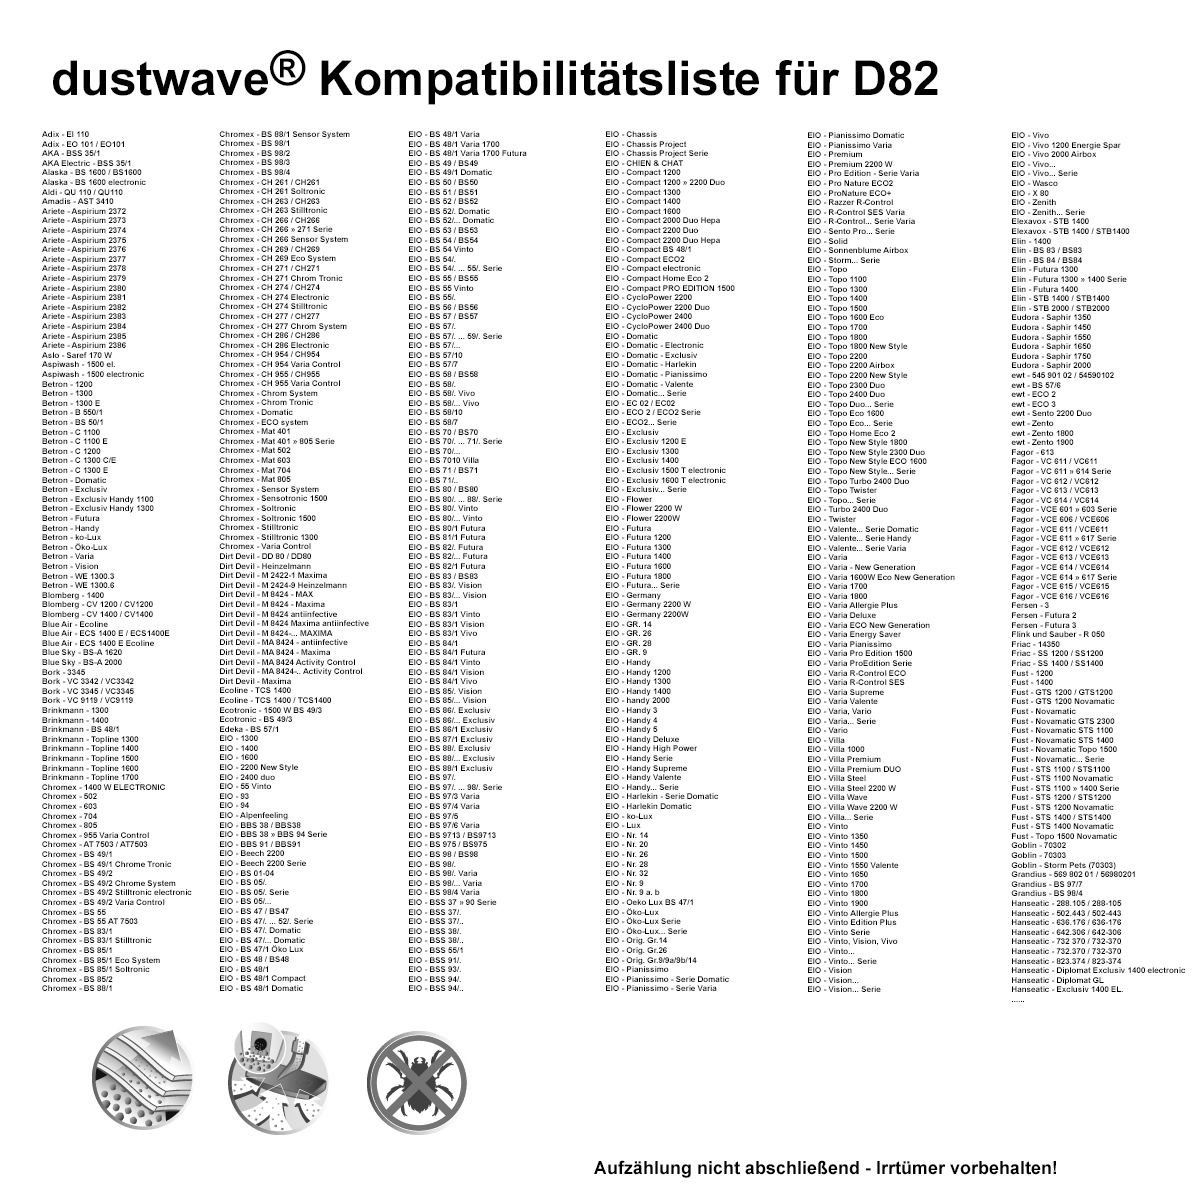 Dustwave® 1 Staubsaugerbeutel für Base BA 6002 - hocheffizient mit Hygieneverschluss - Made in Germany